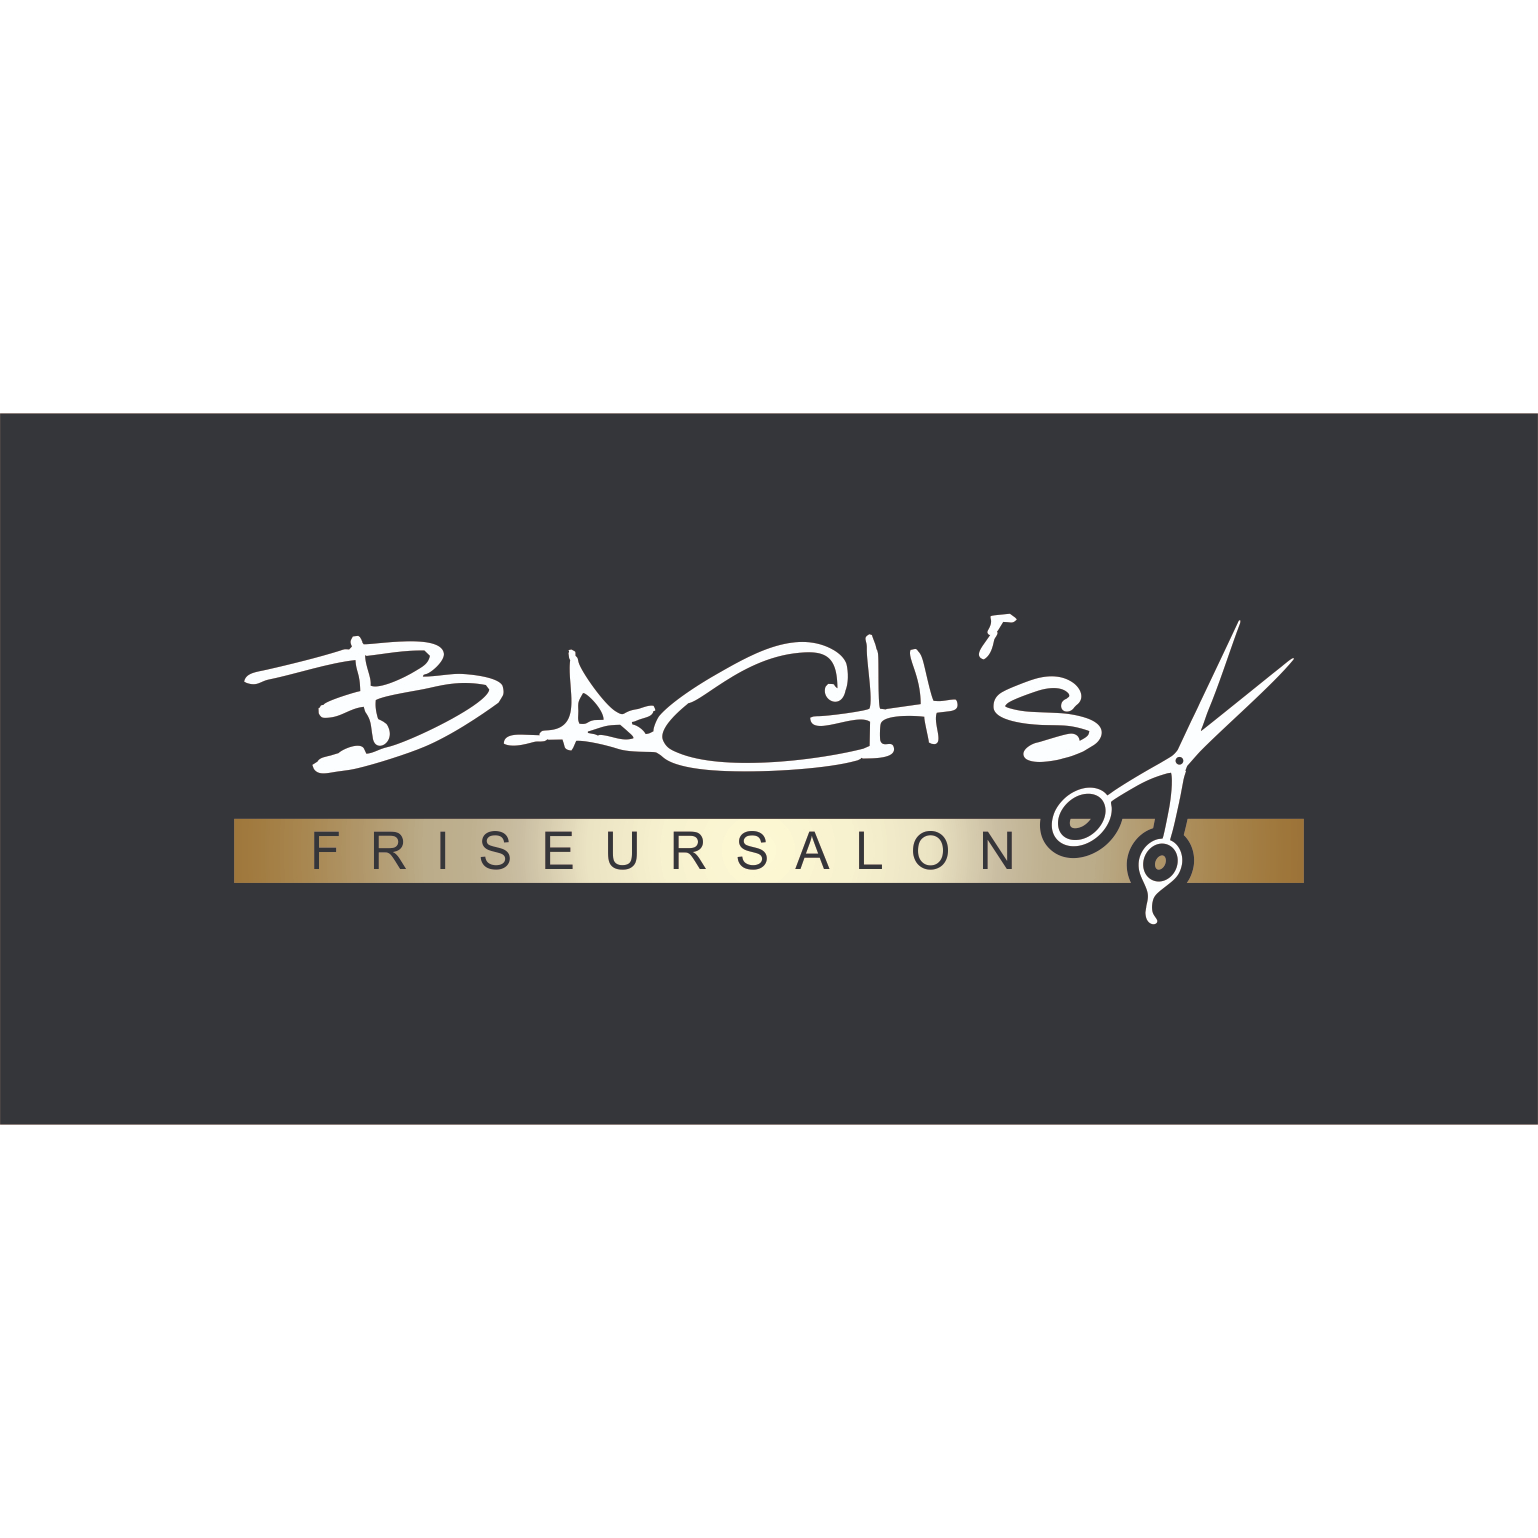 BACH's Friseursalon Logo